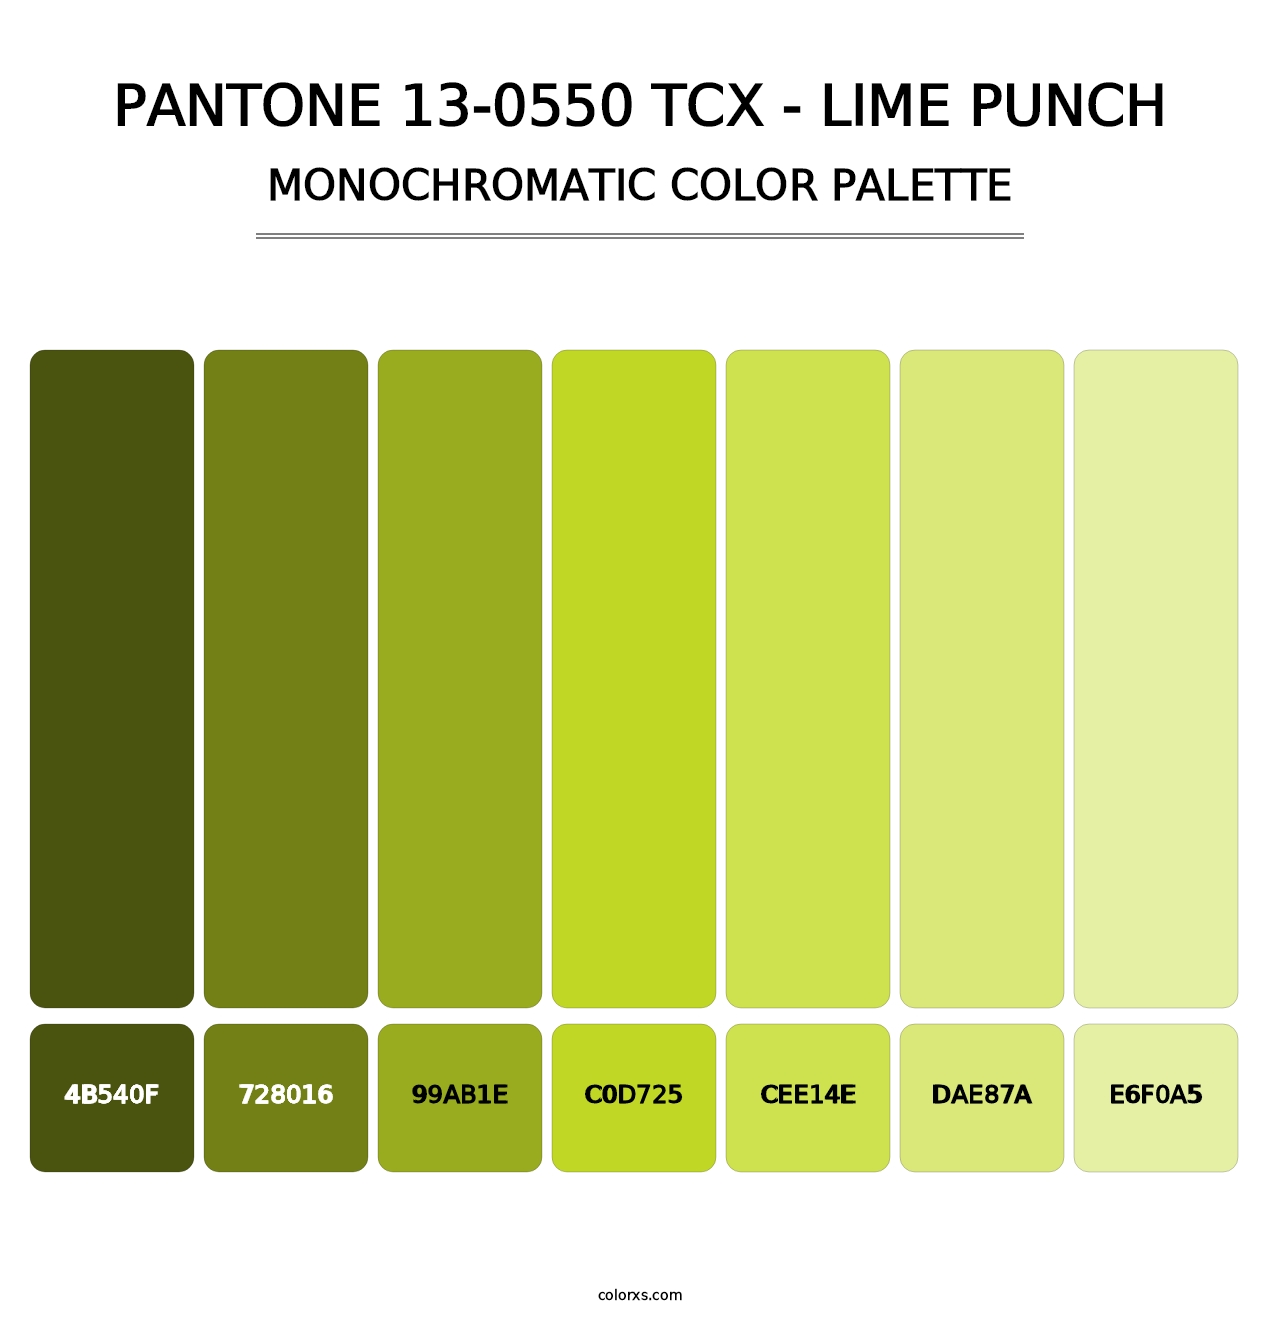 PANTONE 13-0550 TCX - Lime Punch - Monochromatic Color Palette